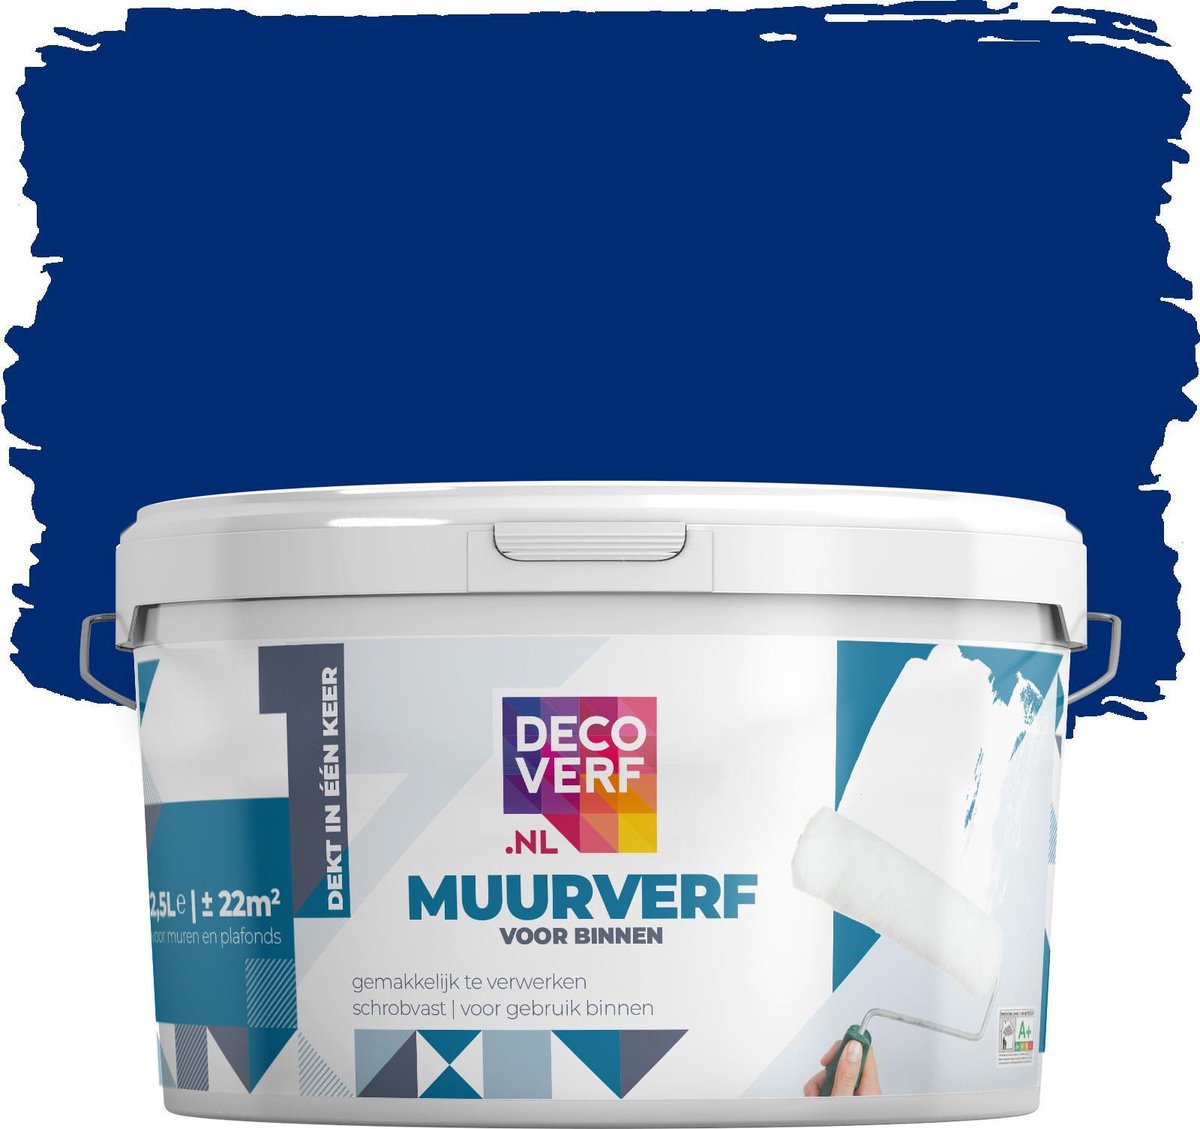 Decoverf muurverf mat, Koningsblauw, 2.5L | bol.com